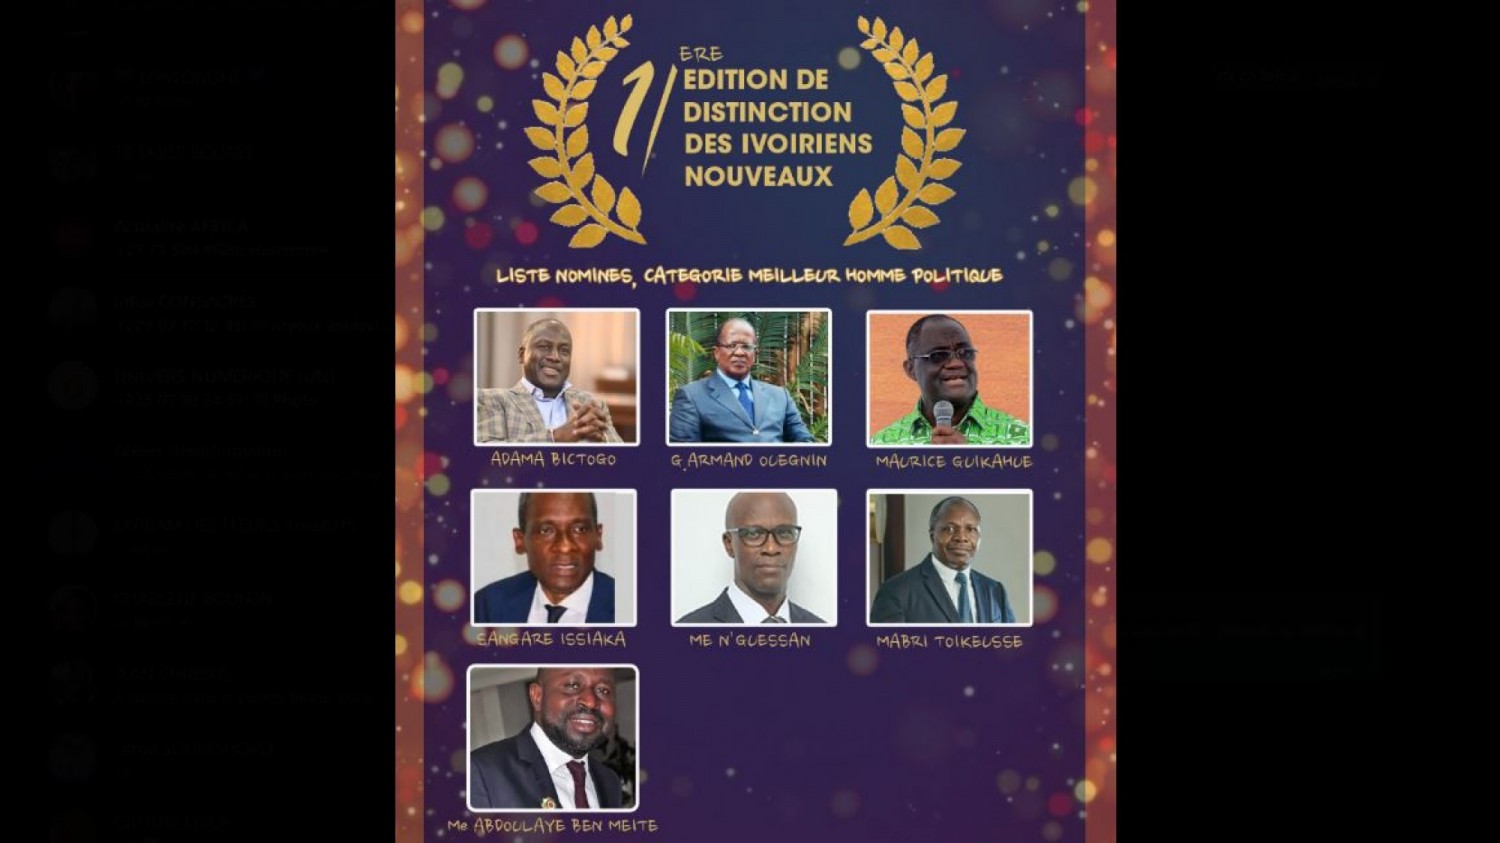 Côte d'Ivoire : Distinction de l'Ivoirien Nouveau, sur 33 nominés, 10 personnalités ayant impacté leur quotidien, récompensées à Yamoussoukro